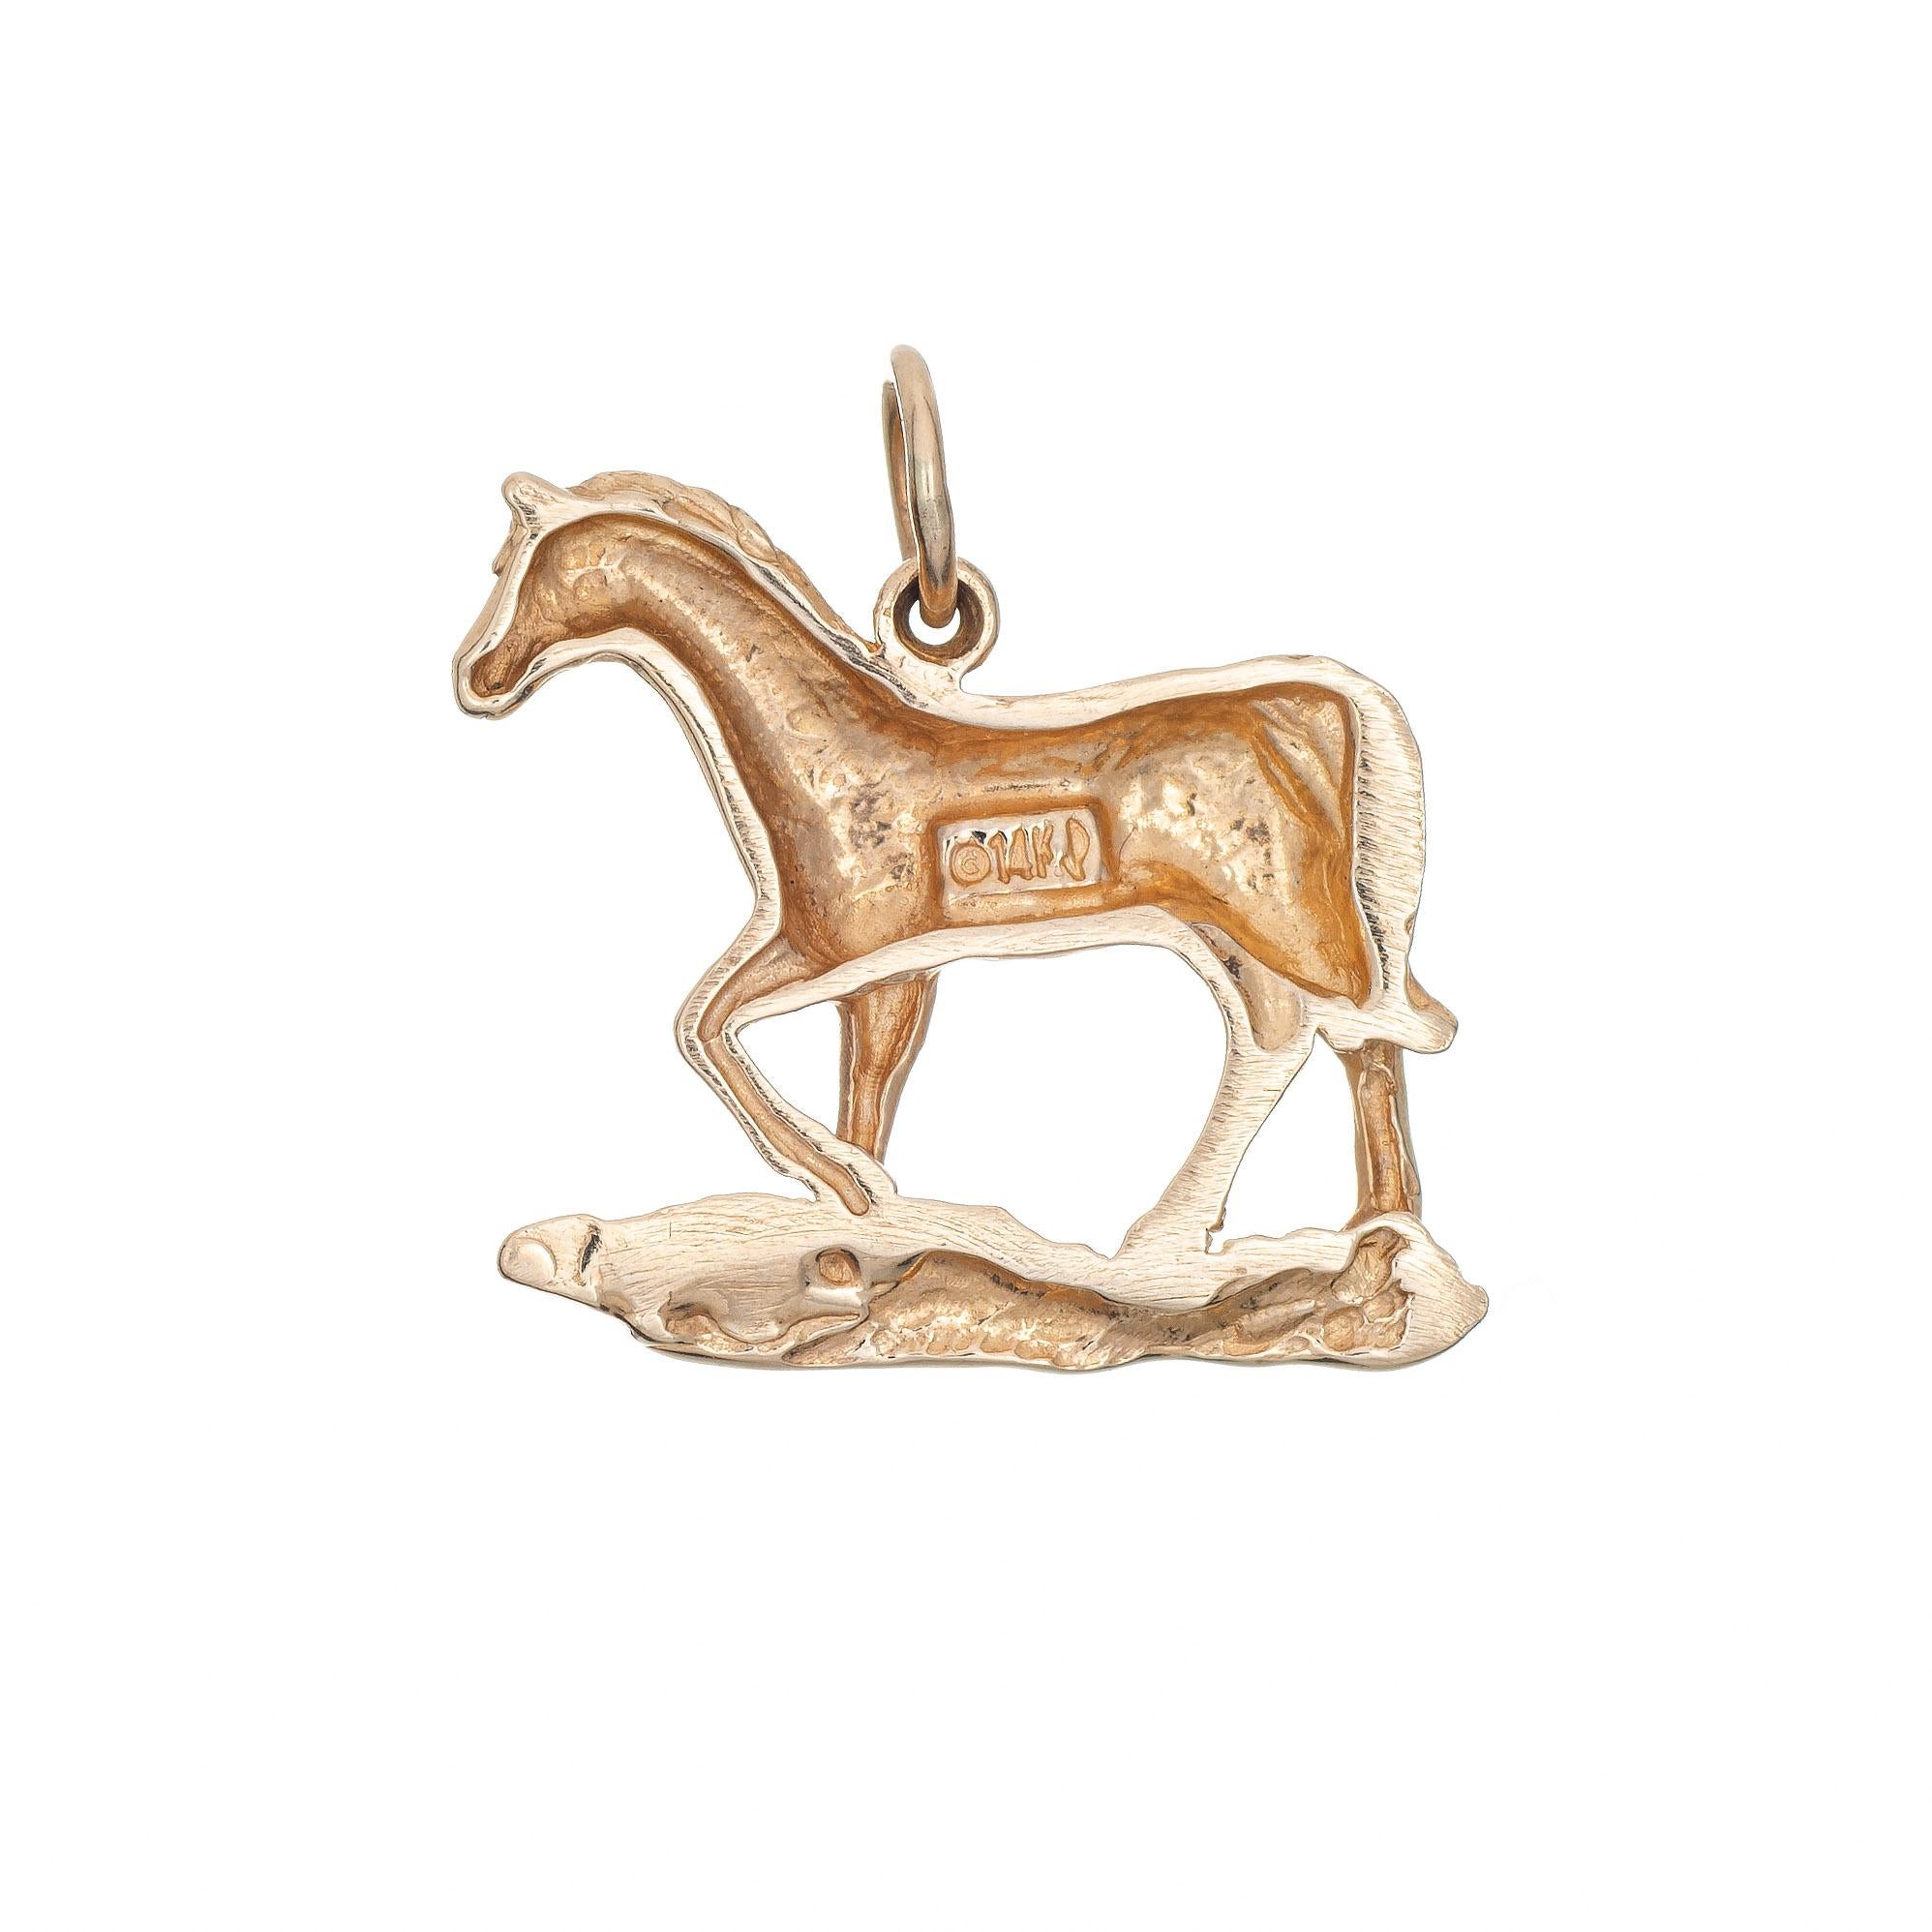 Charmant cheval vintage finement détaillé, fabriqué en or jaune 14k.  

Le cheval trotteur est plus petit en taille (3/4 de pouce de diamètre) et se porte très bien sur un bracelet à breloques ou comme pendentif.

Le charme est en très bon état et a